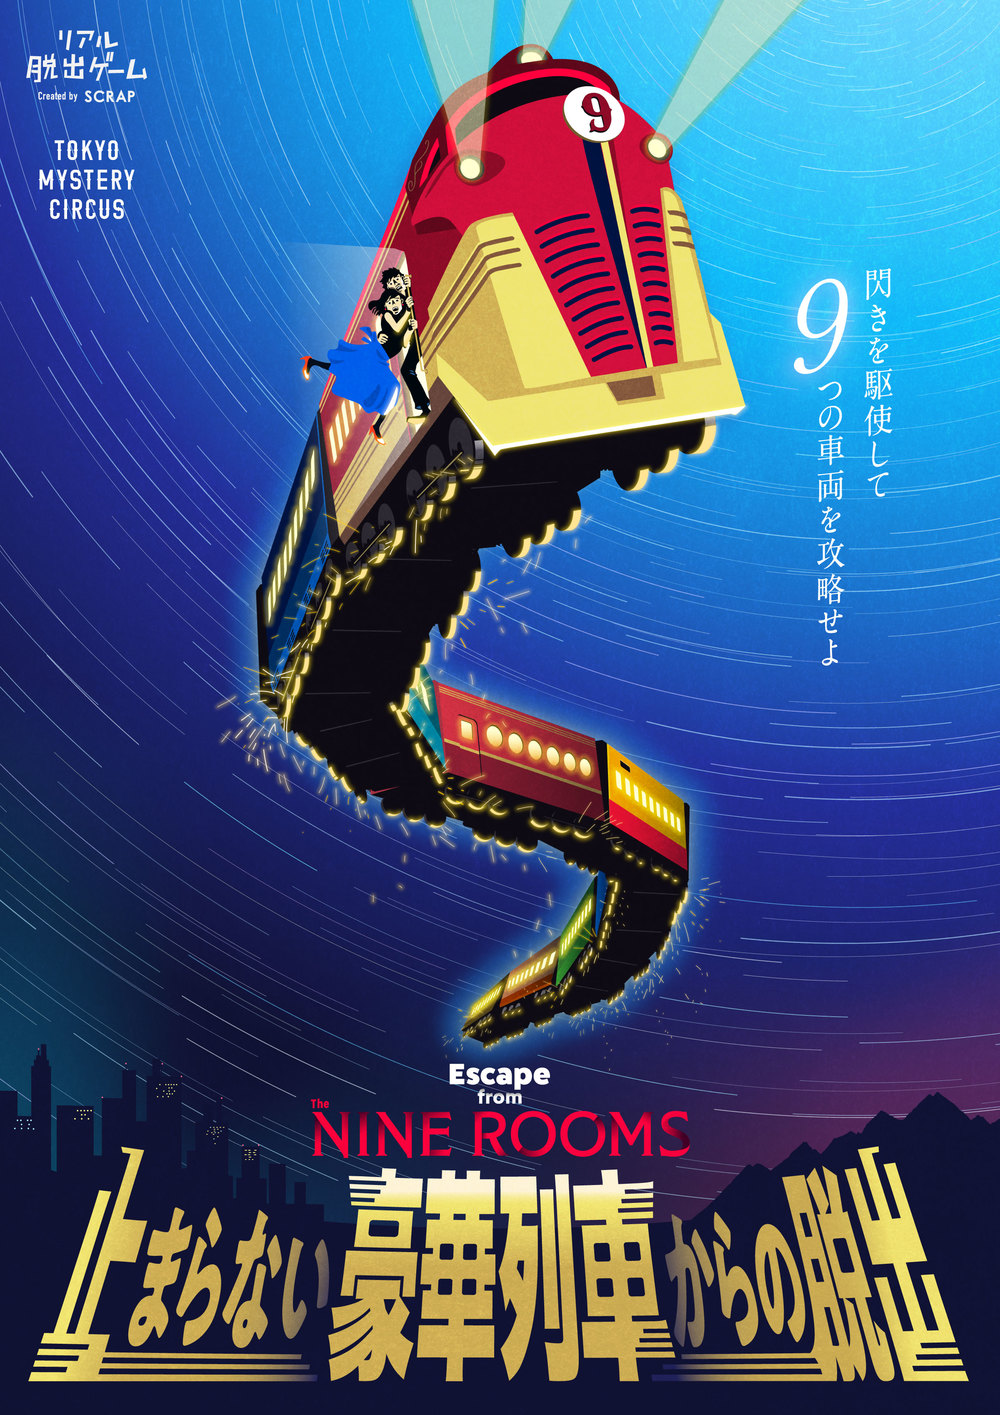 【東京ミステリーサーカス】Escape from The NINE ROOMS「止まらない豪華列車からの脱出」